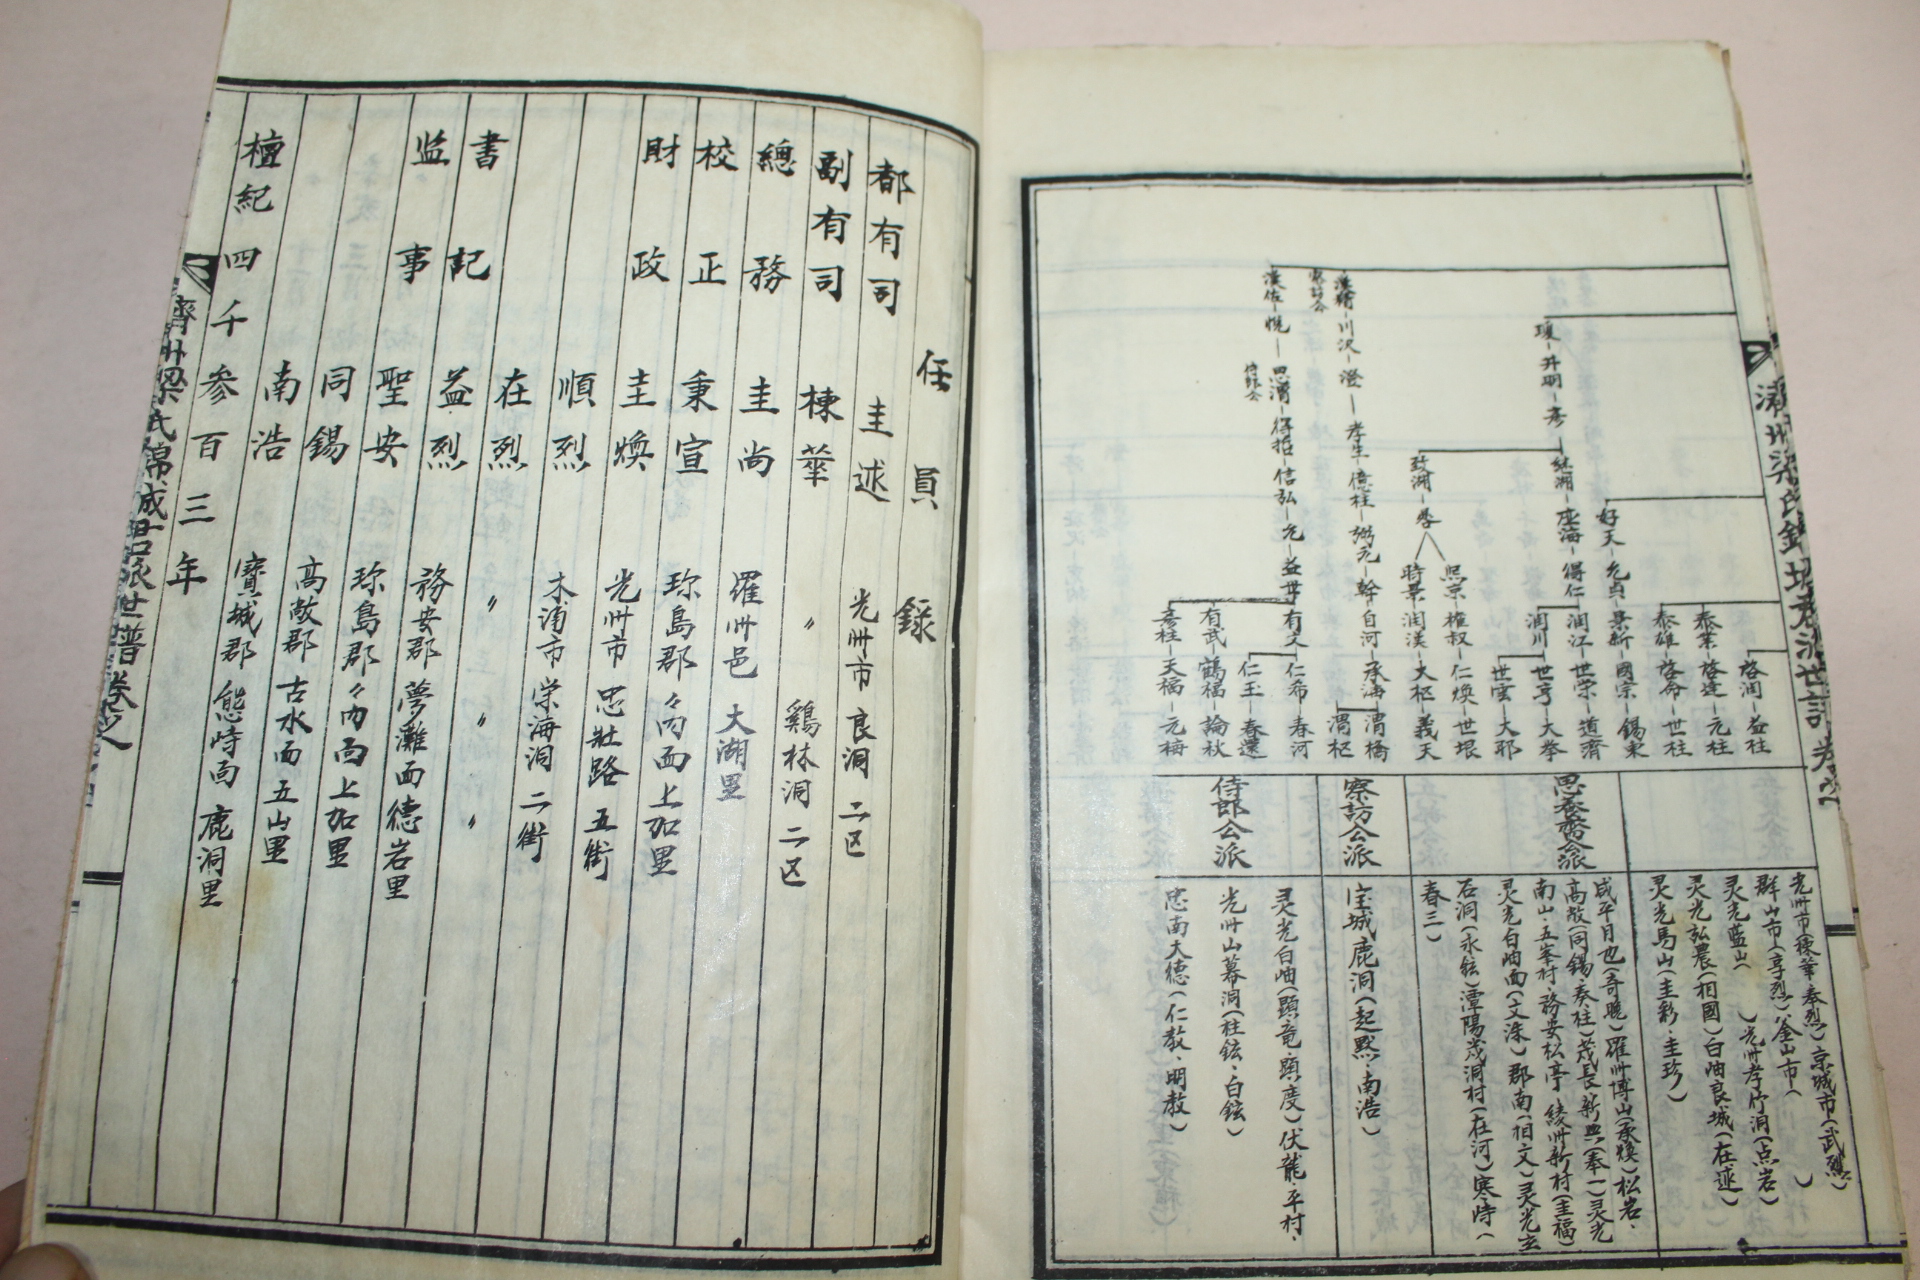 1969년 제주양씨금성군파보(濟州梁氏錦城君派譜) 5책